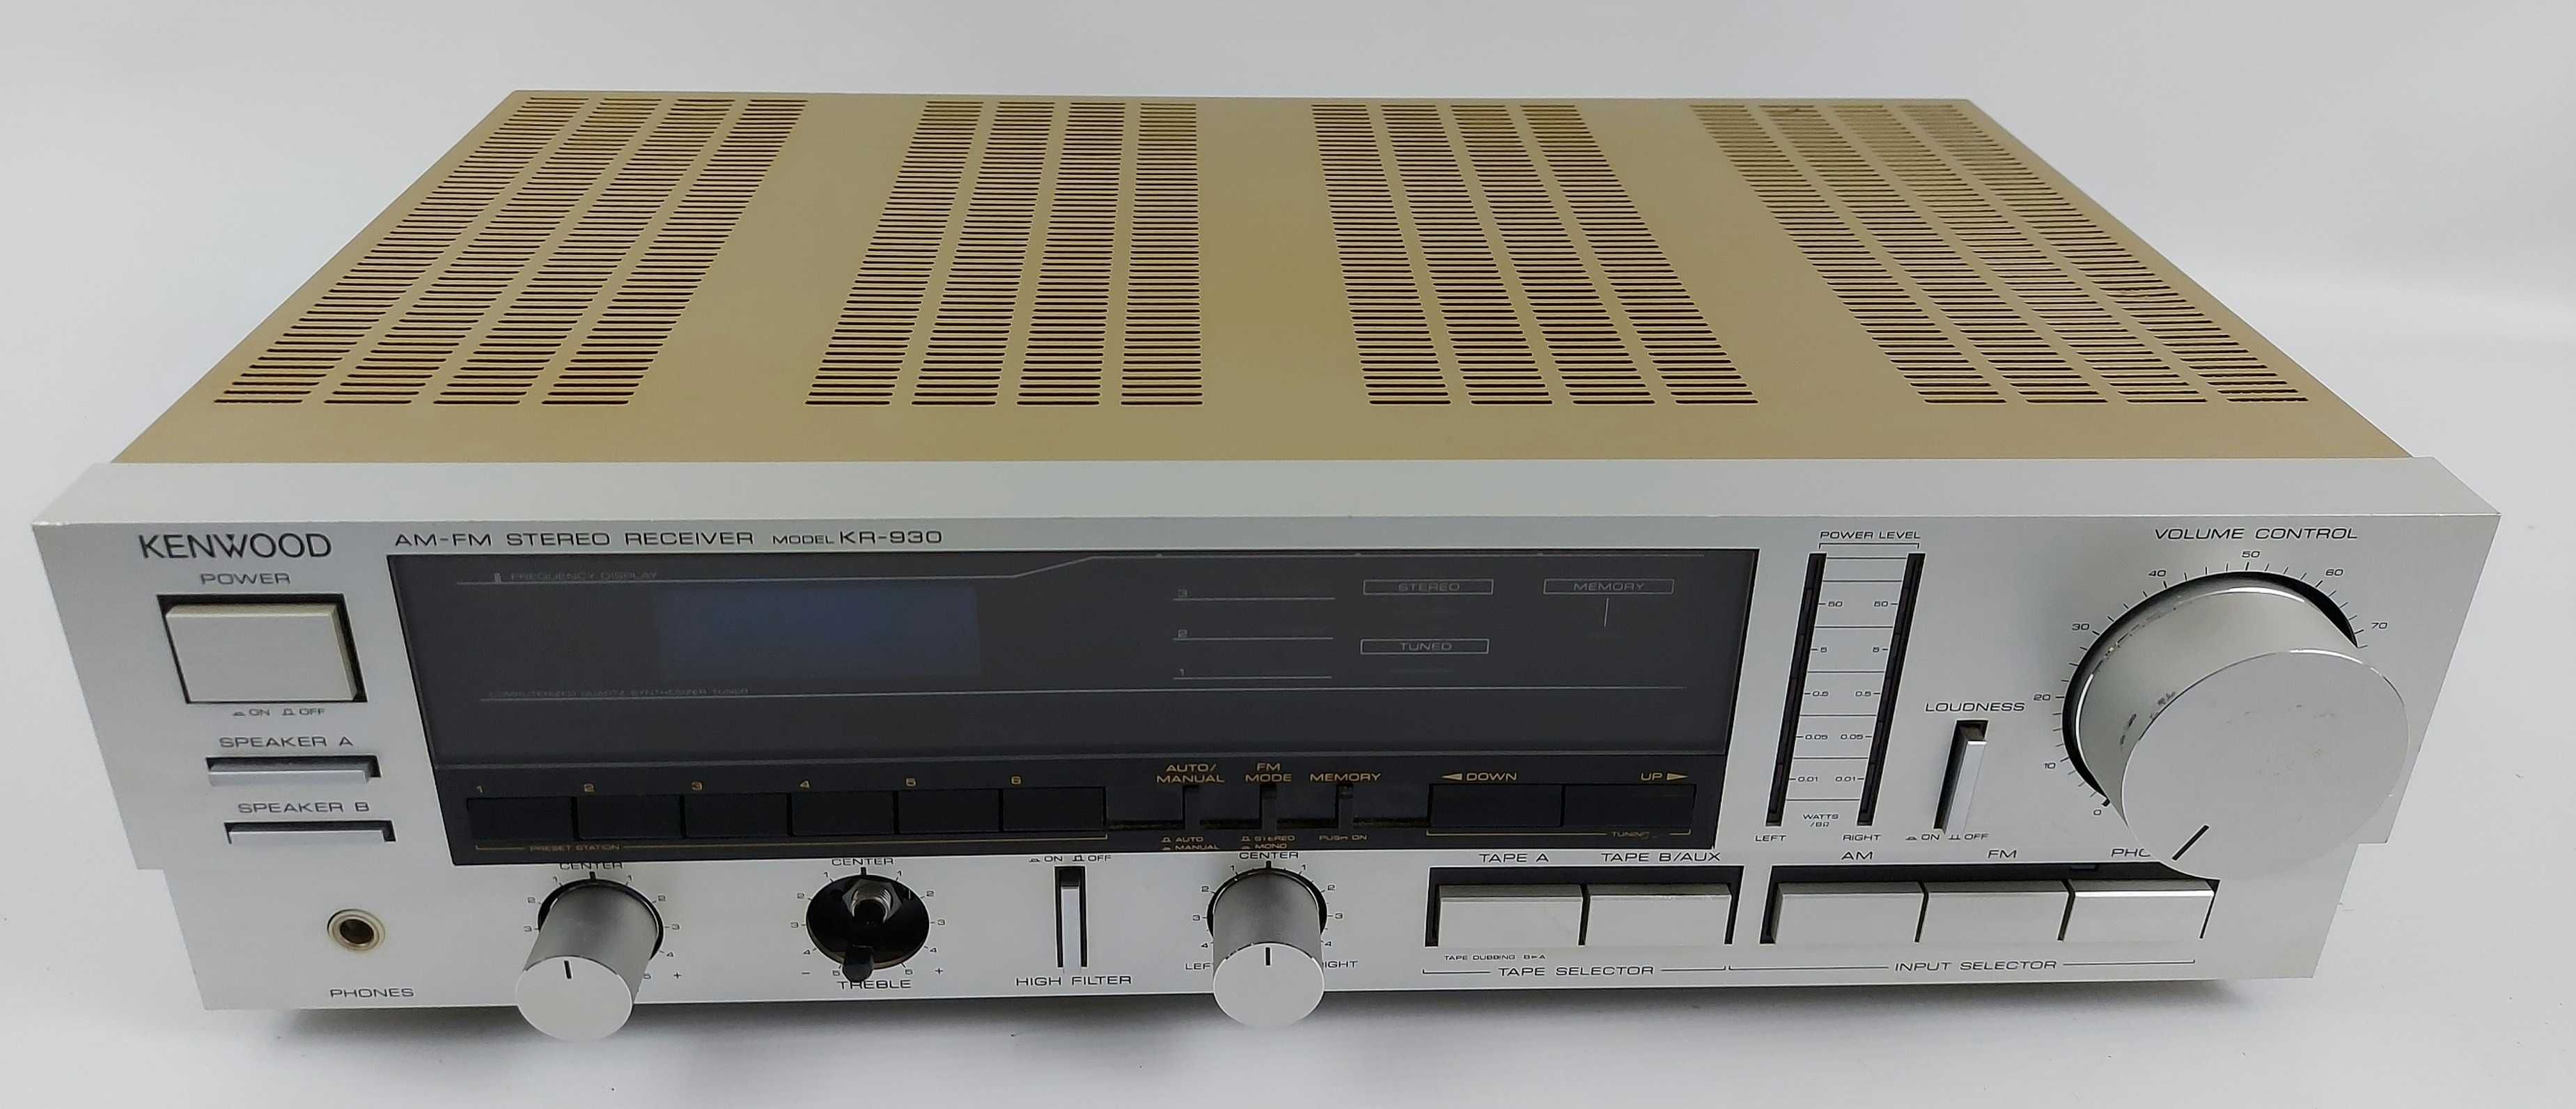 Kenwood KR-930 - amplituner stereo